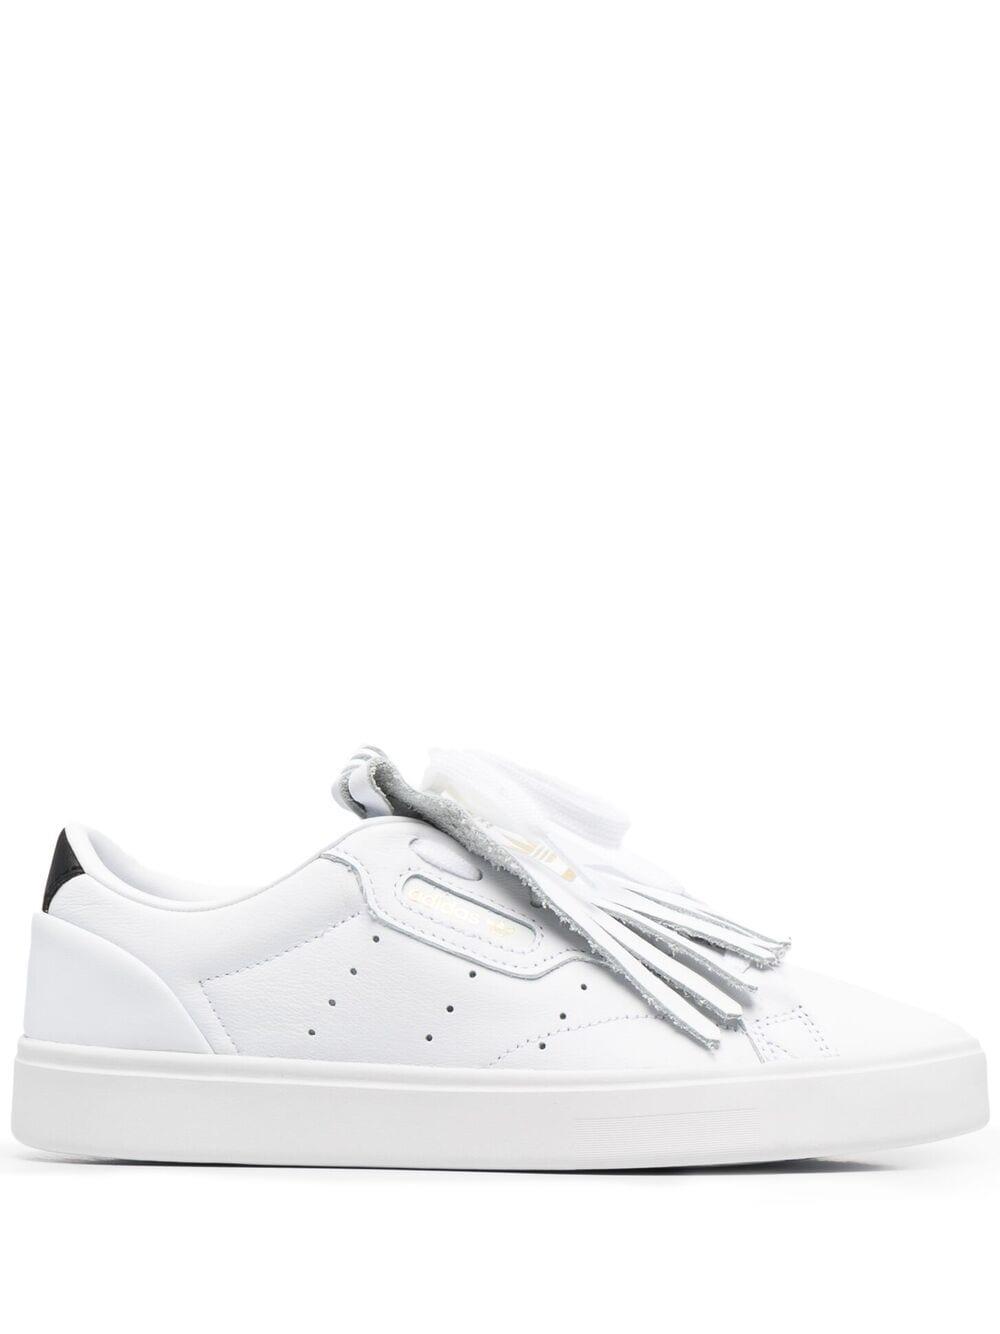 adidas Sleek Tassel-embellished Sneakers in White | Lyst